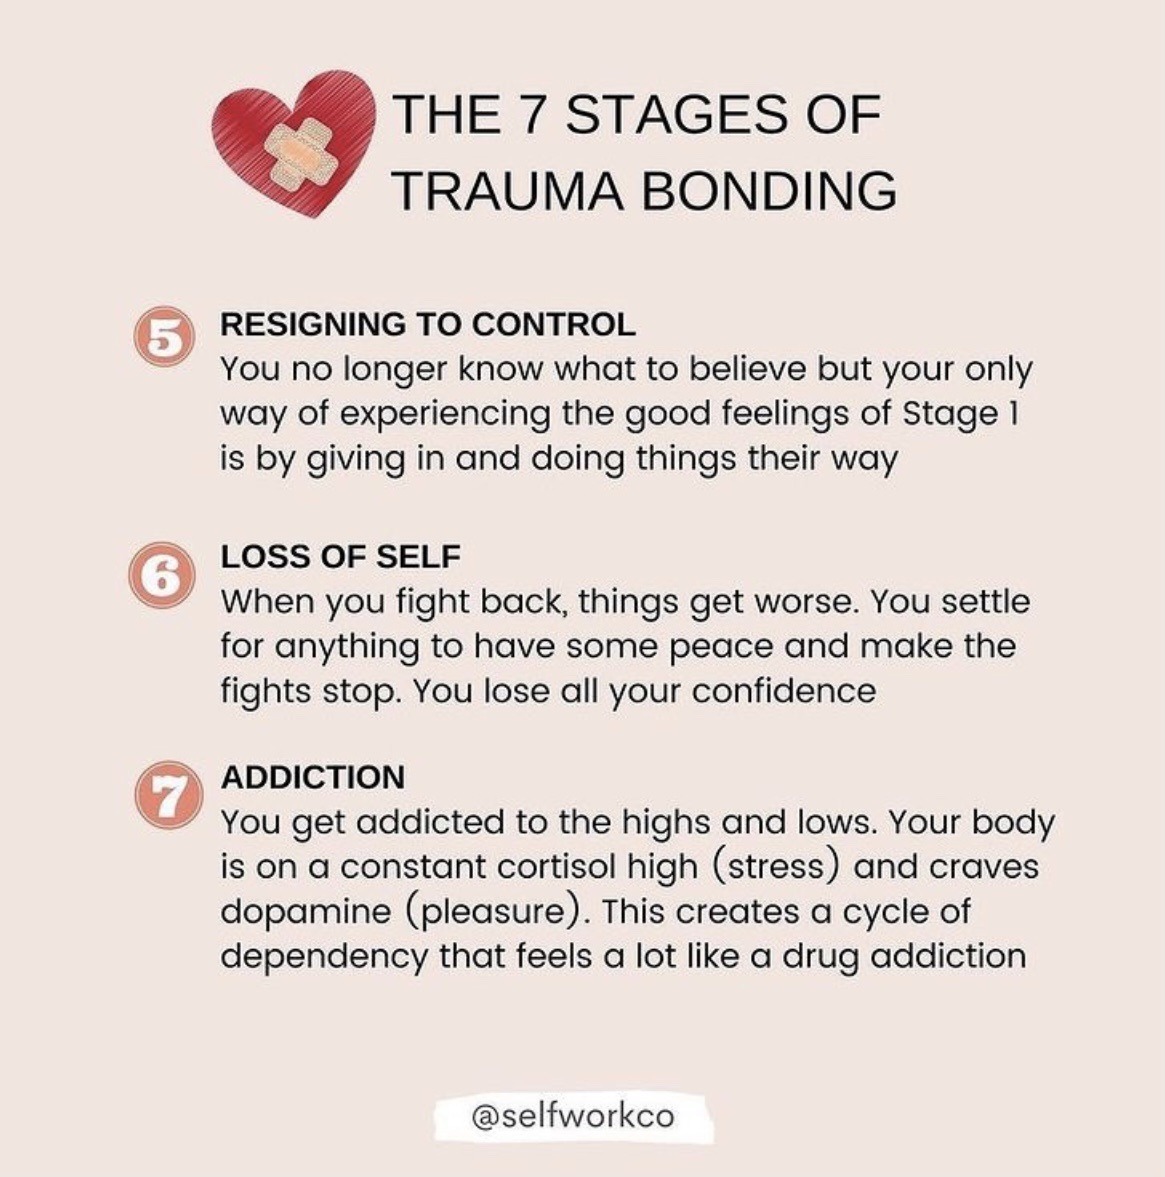 trauma bonding signs